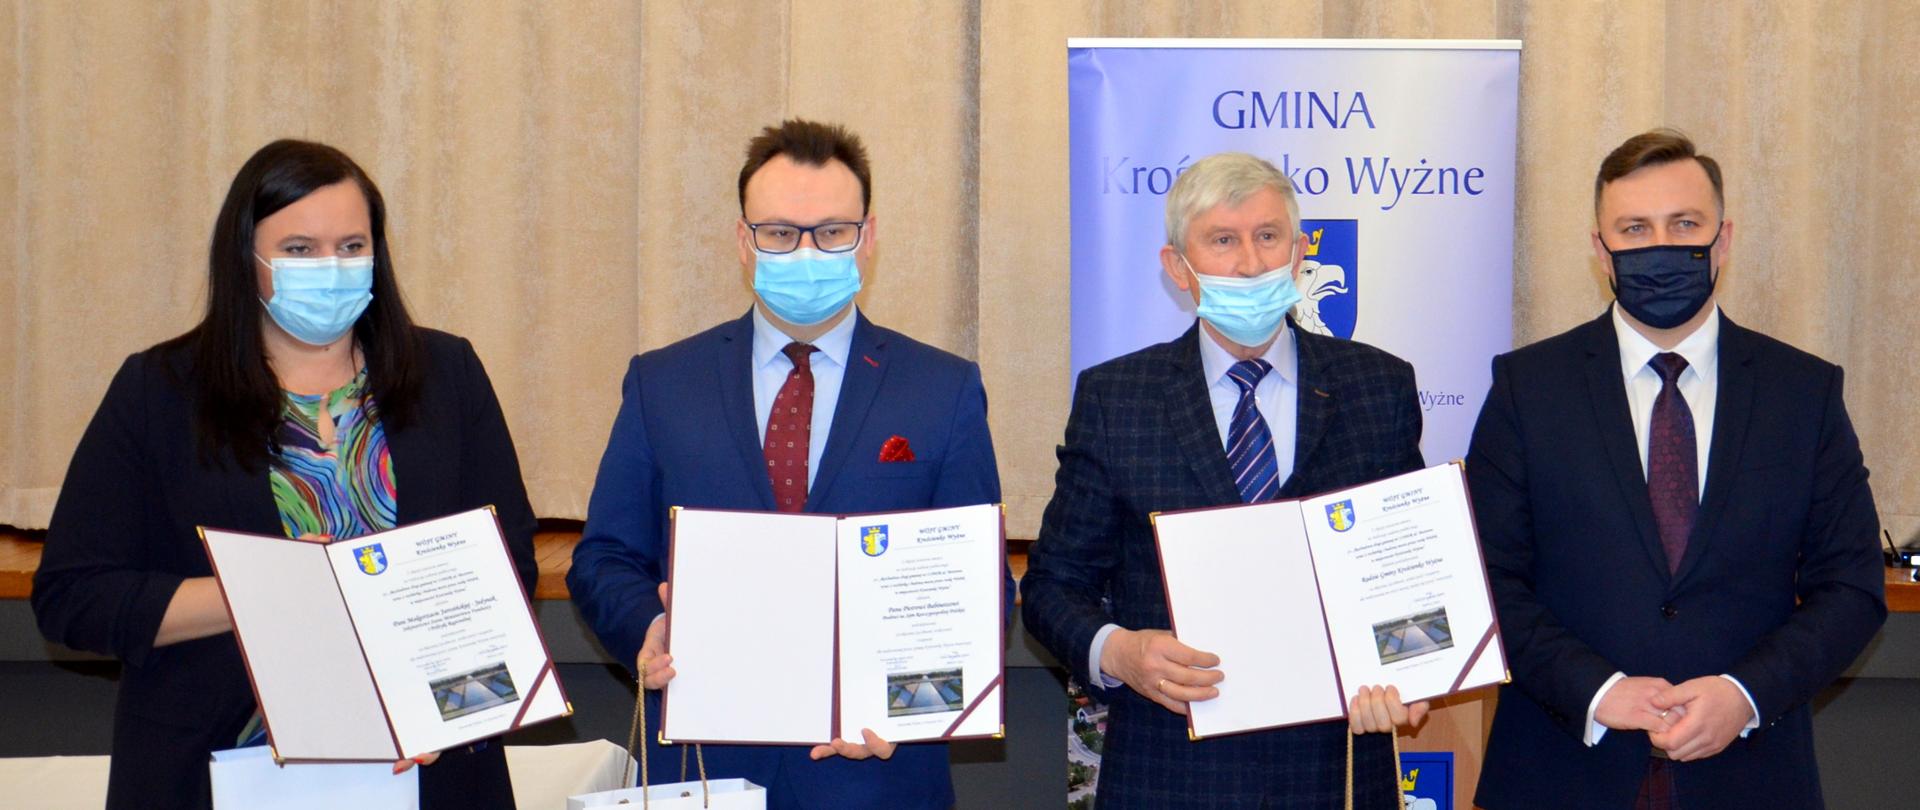 Na zdjęciu cztery osoby (pierwsza od lewej minister Małgorzata Jarosińska-Jedynak) z podpisanymi umowami na inwestycje w Krościenku Wyżnym